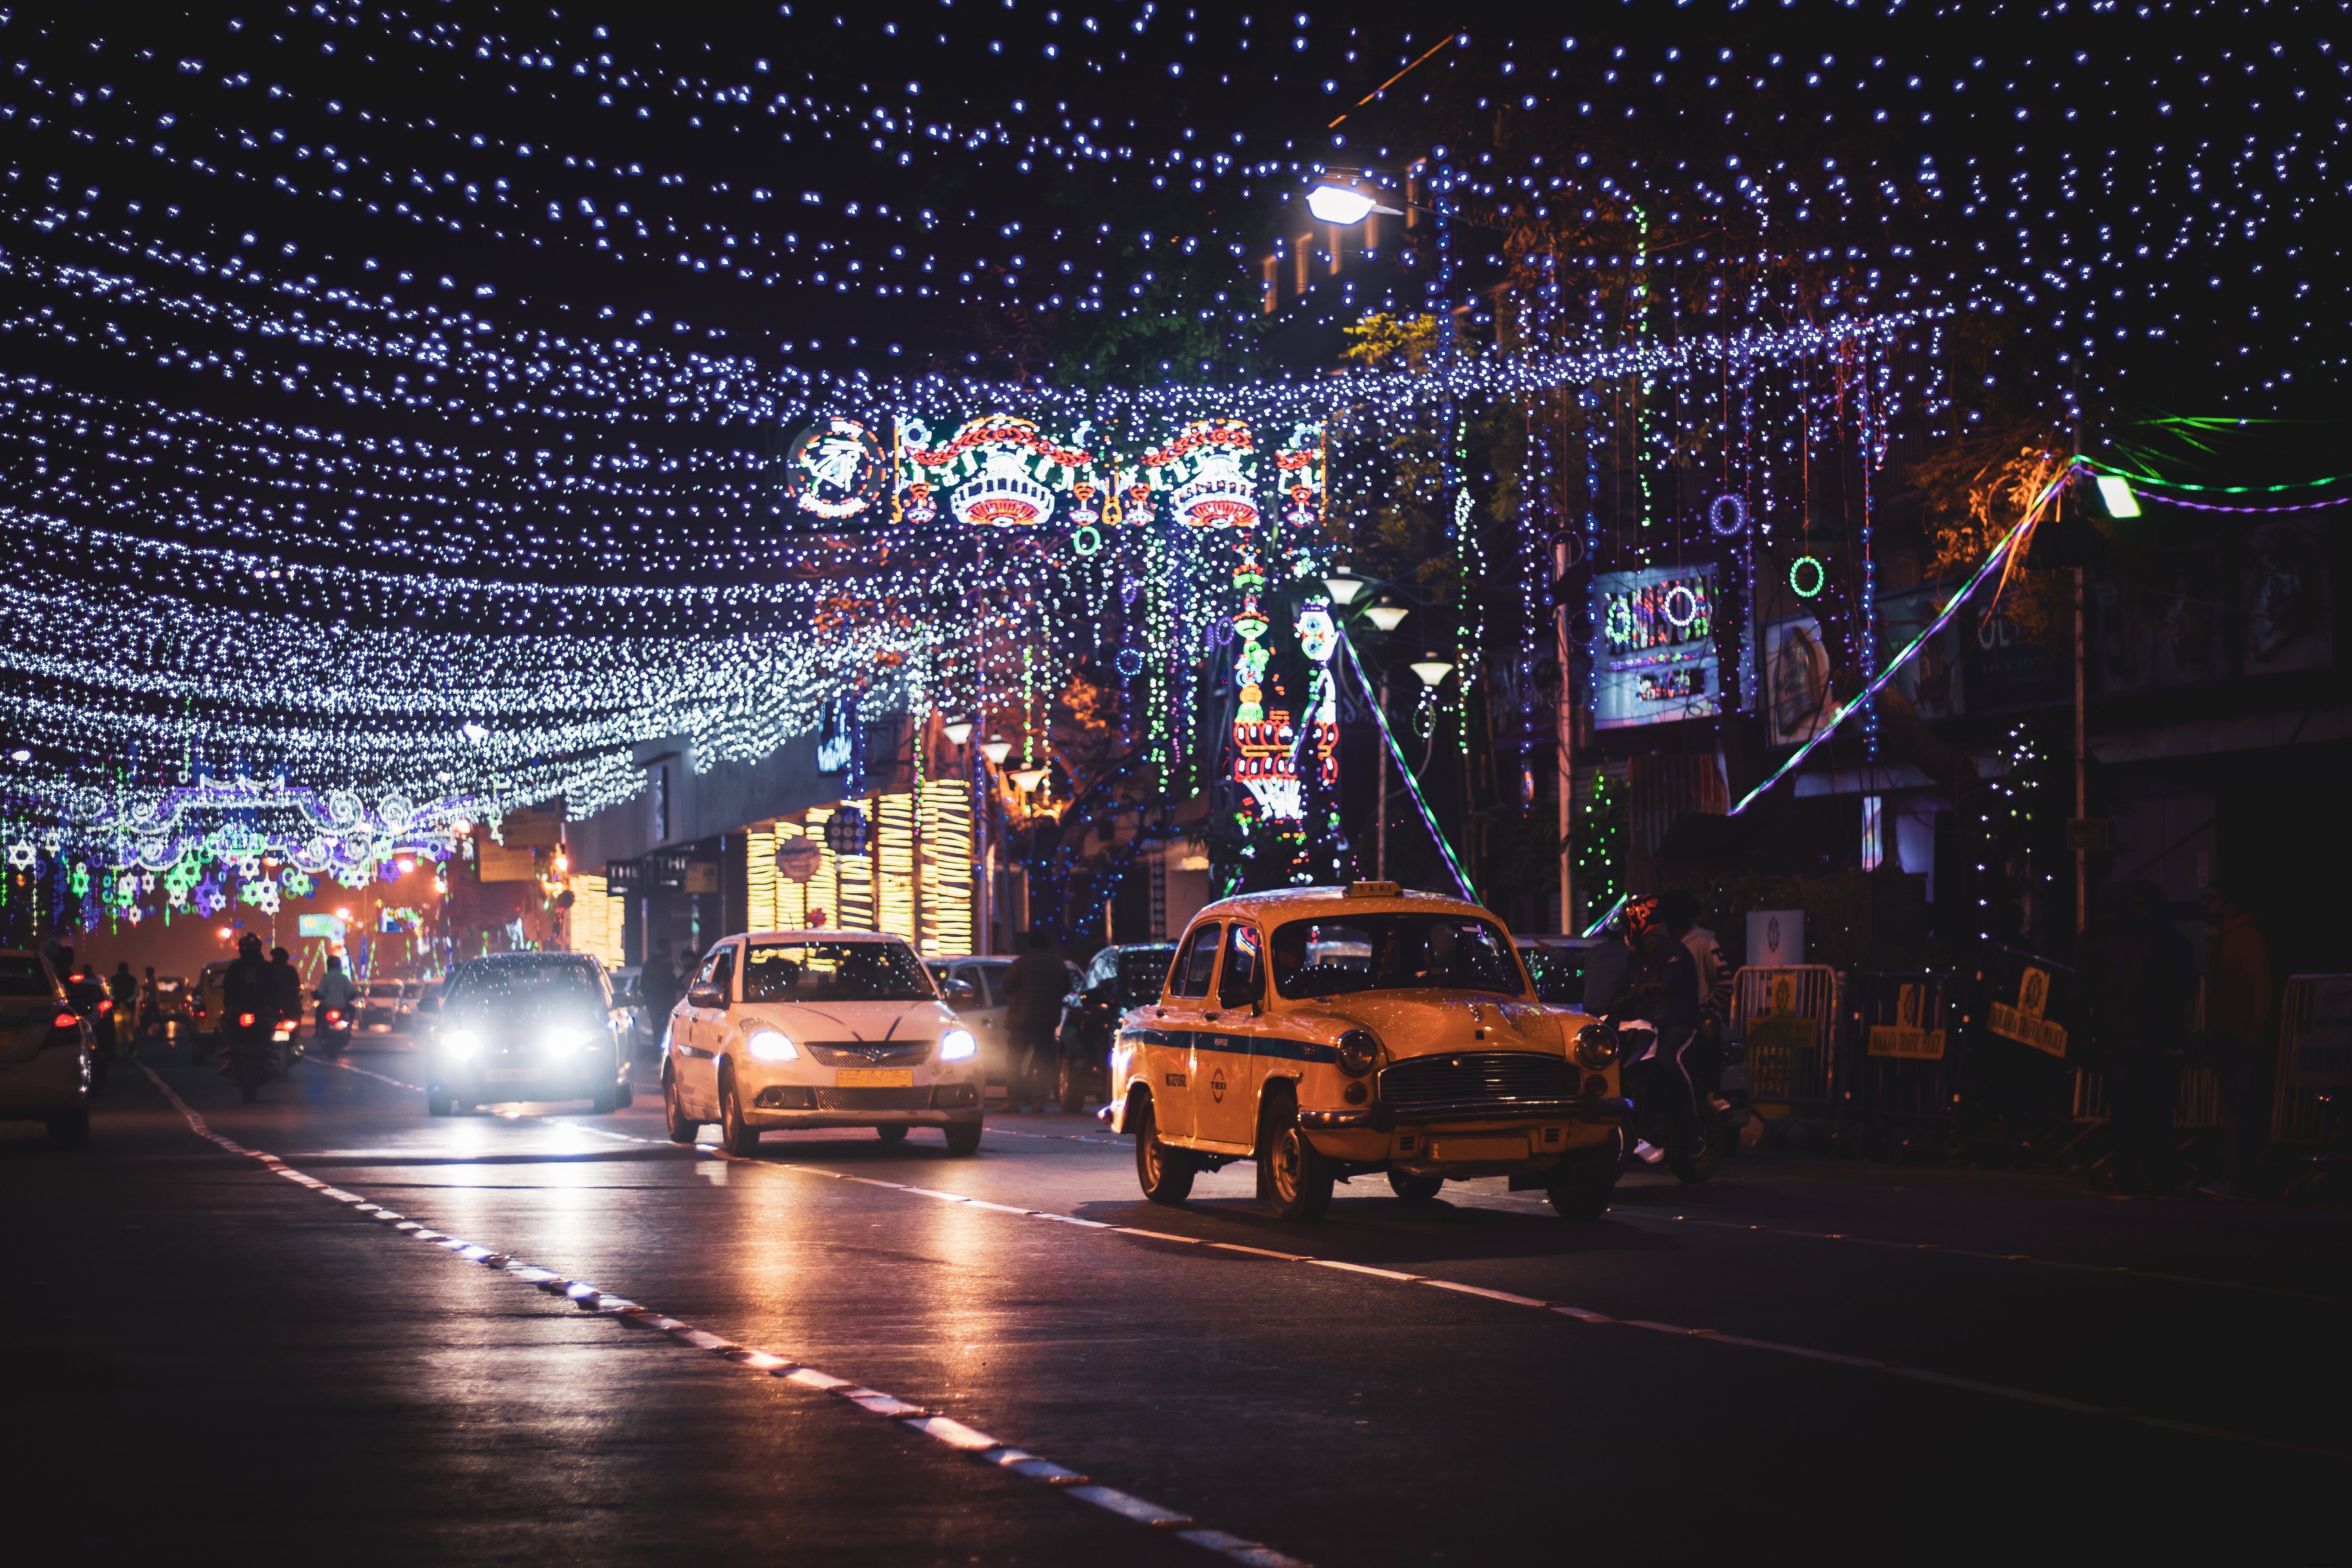 Táxi e outros carros pequenos em uma foto iluminada de uma rua da cidade 